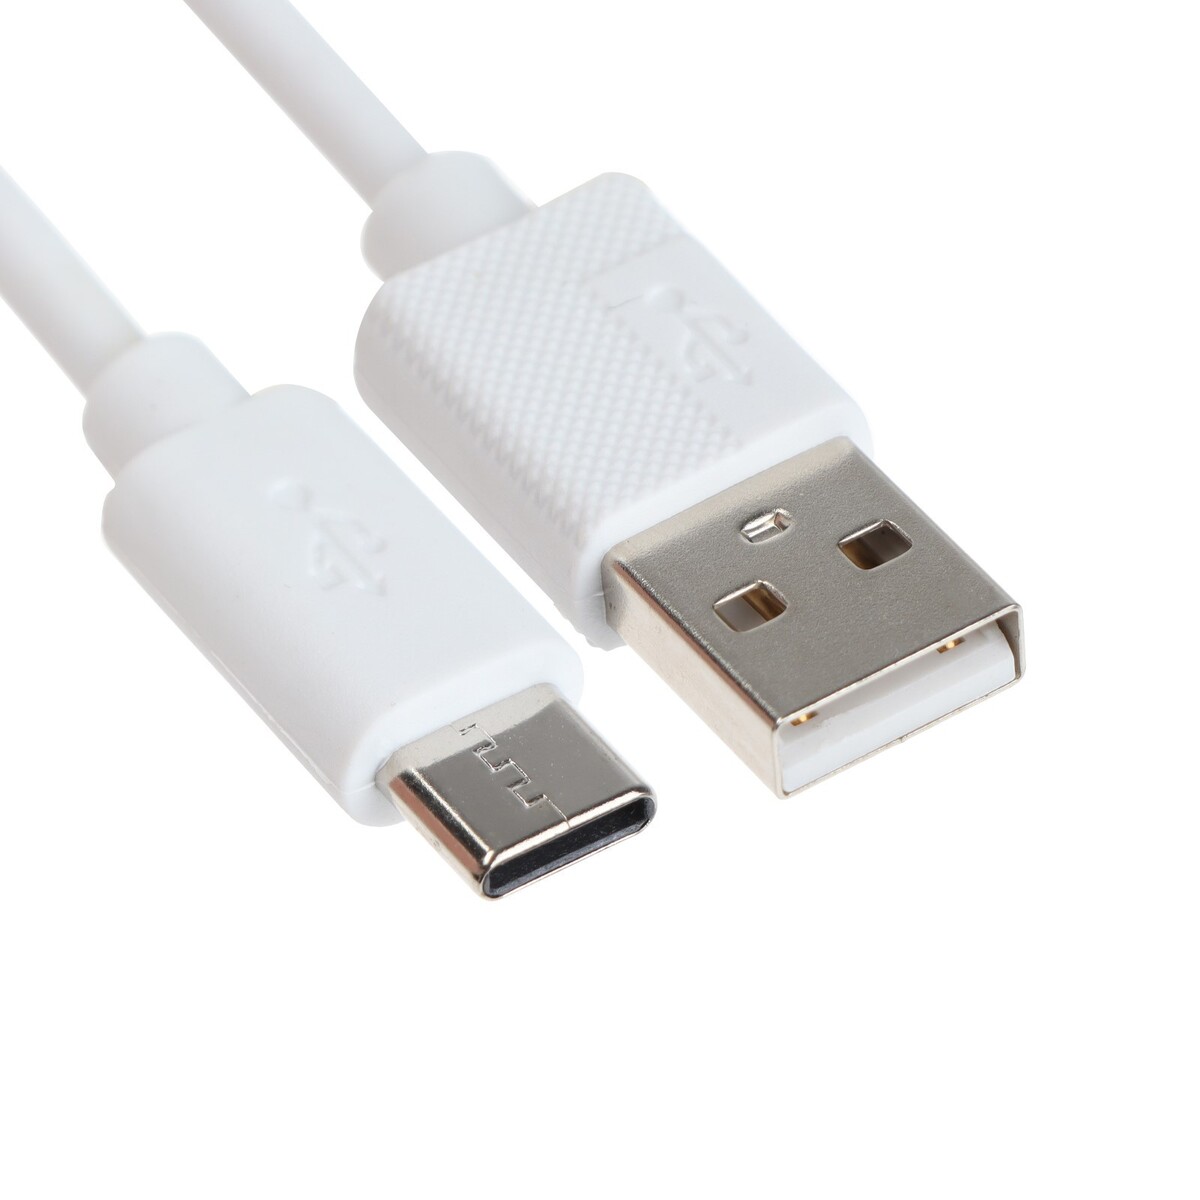 Кабель type-c - usb, 2.4 а, 1 м, зарядка + передача данных, пакет, белый кабель more choice k71si tpe 2м smart usb 2 4a pd 30w быстрая зарядка для apple 8 pin type c